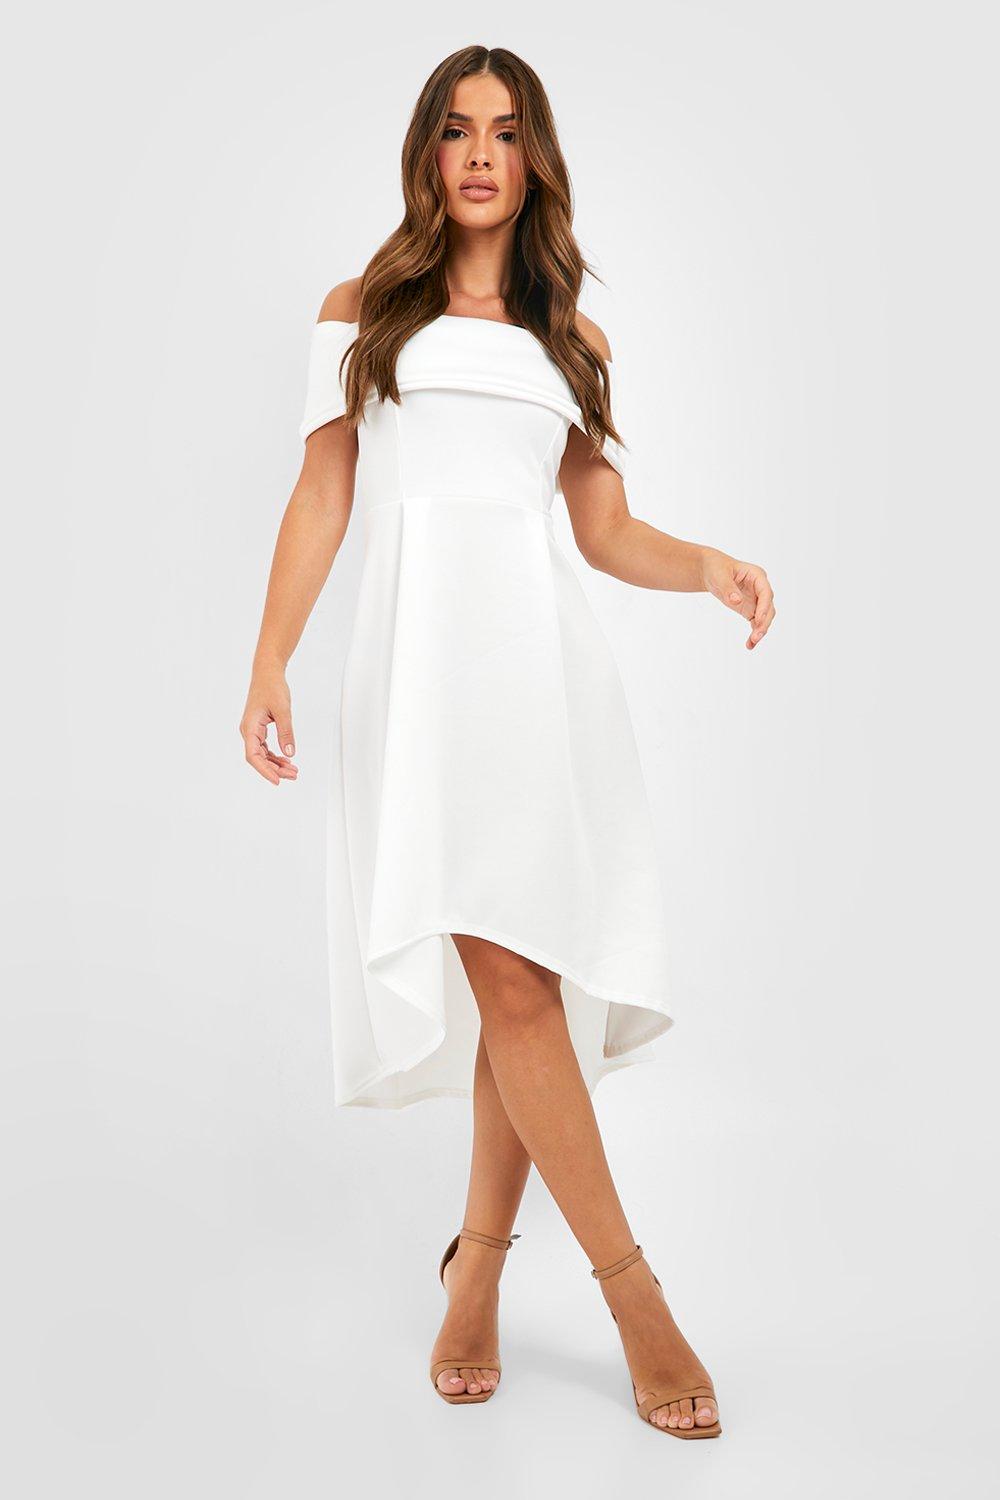 White Dresses | White, Ivory ☀ Cream ...